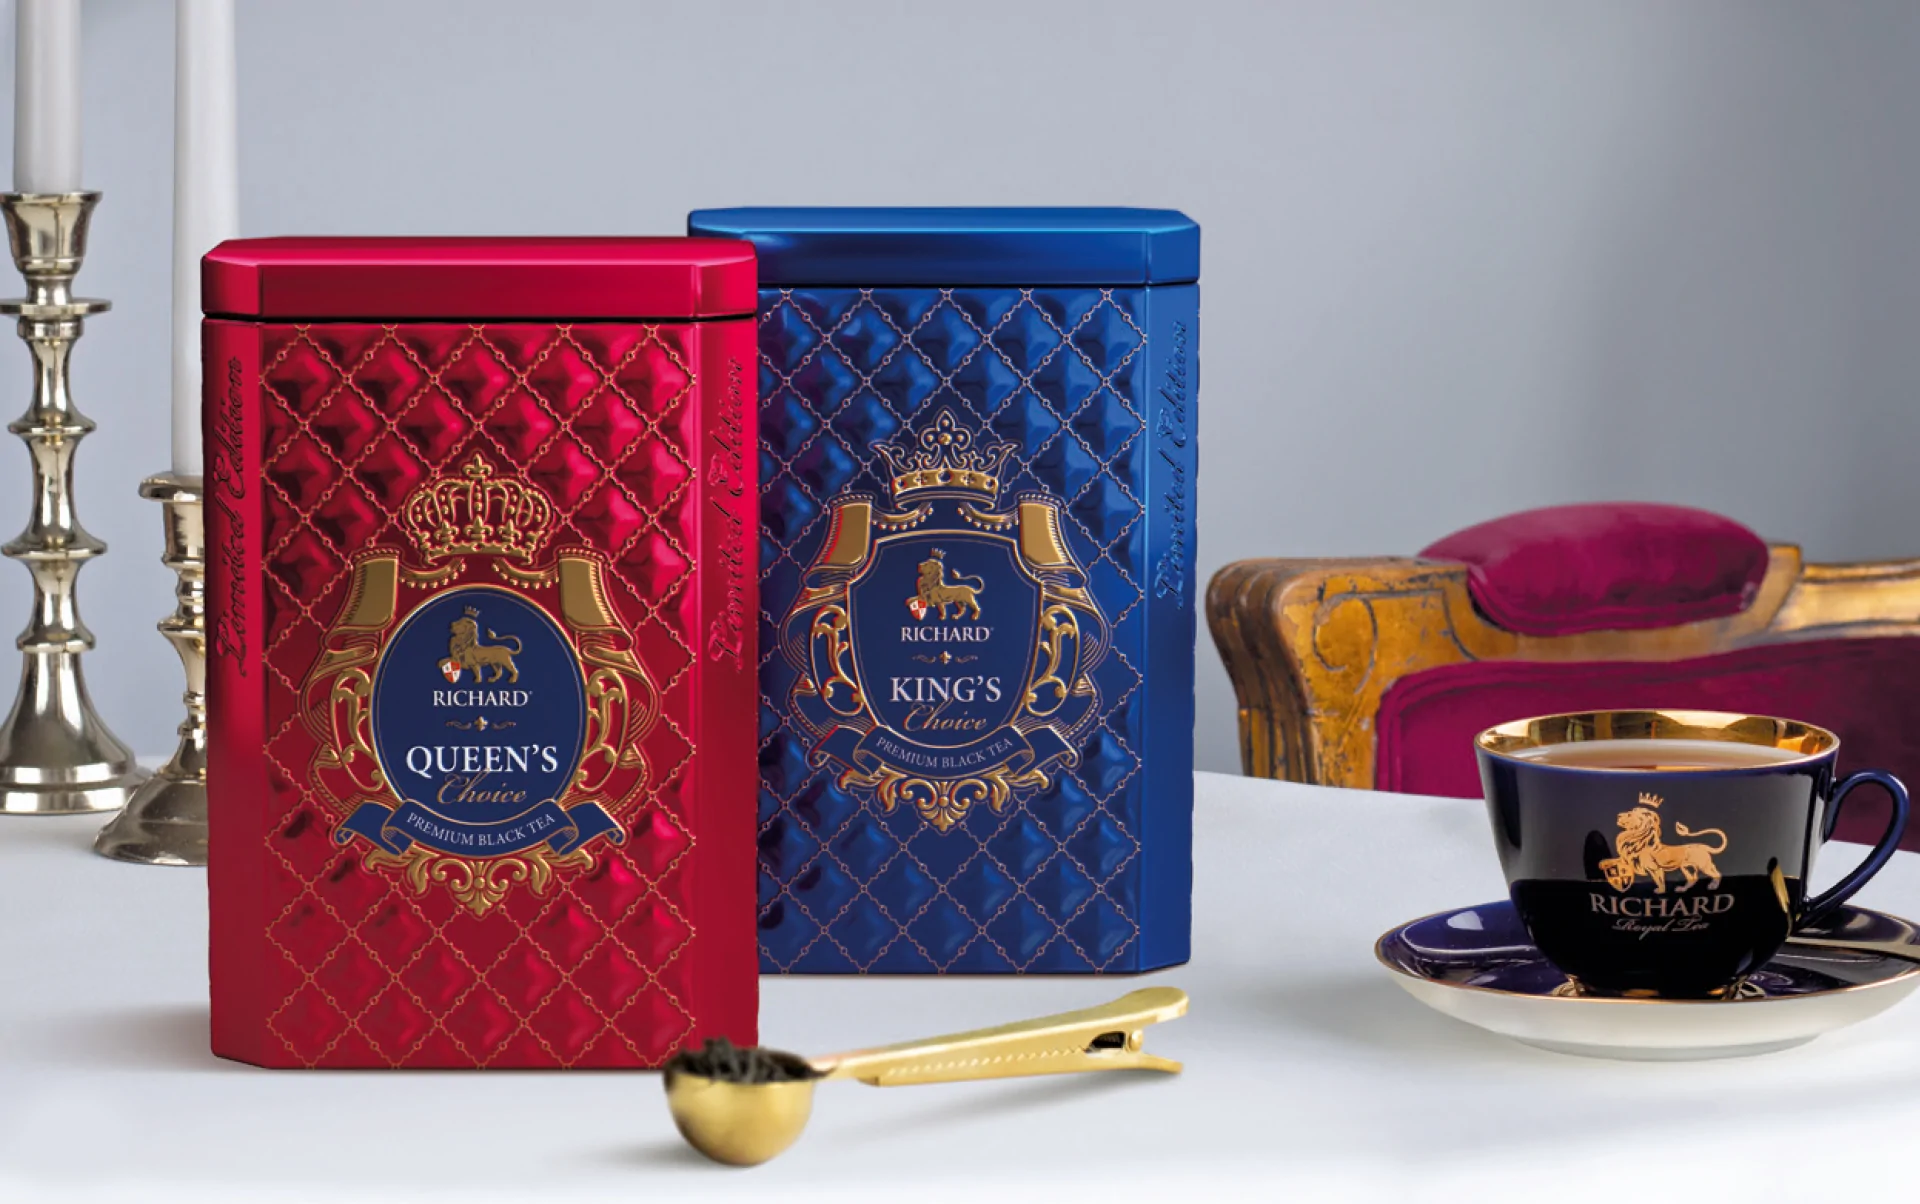 Чай Ричард в подарочной упаковке King's choice & quieen's choice 80 грамм купить